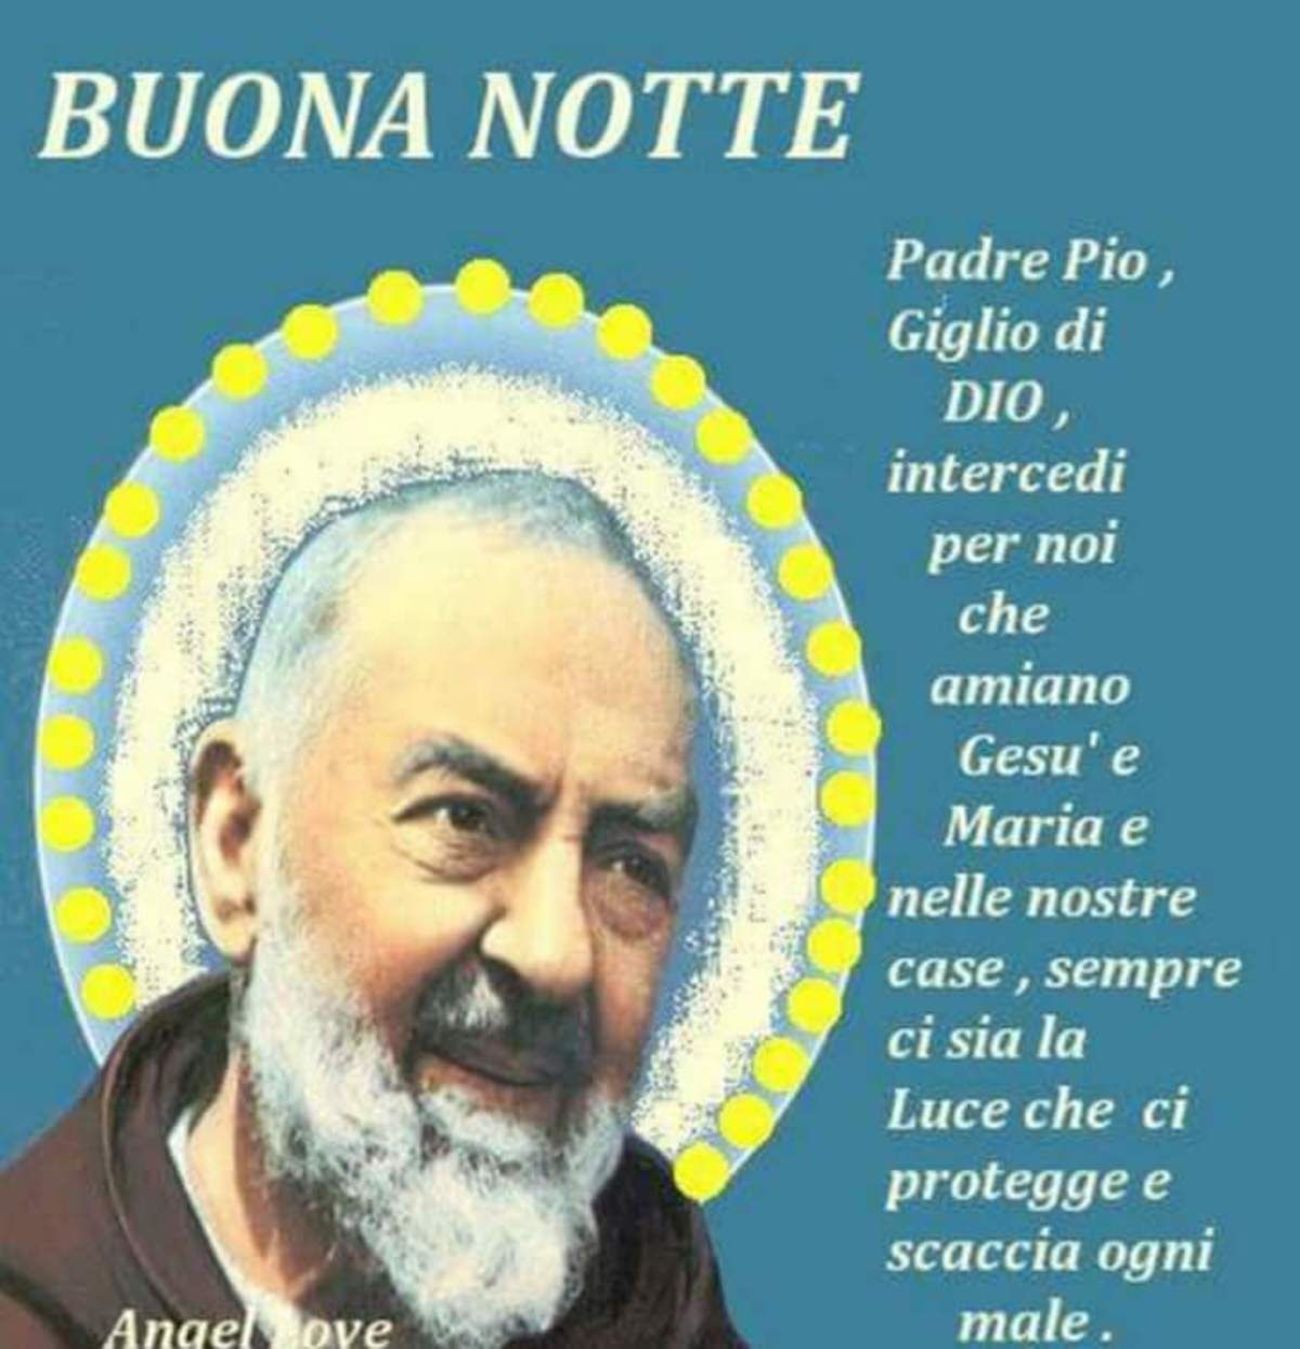 Buonanotte con Padre Pio 6